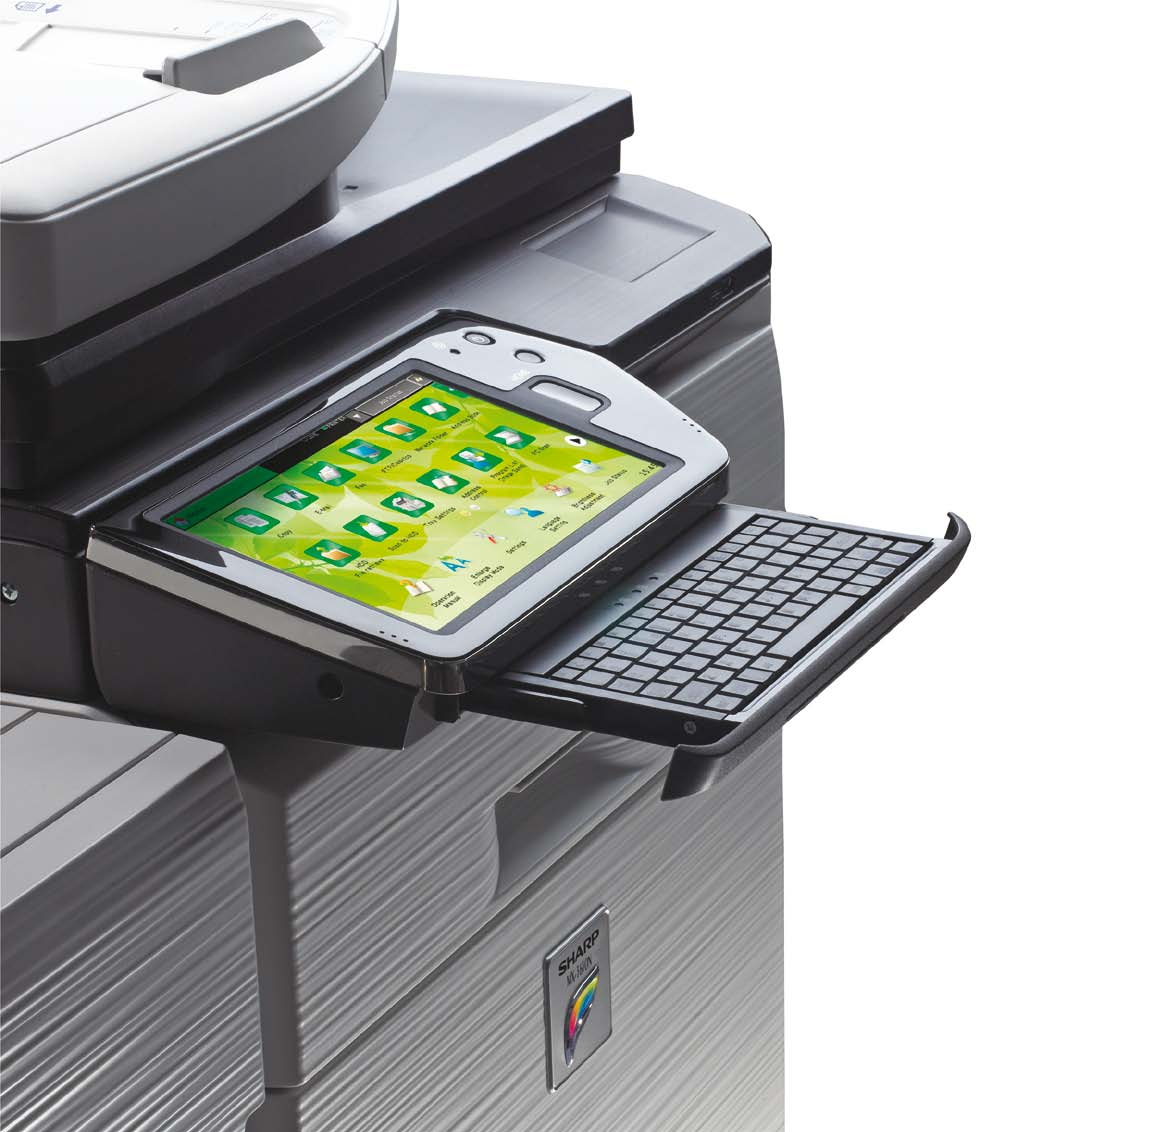 MX-3610N Digitalt multifunksjonssystem i fullfarger skrive ut I kopiere I skanne I fakse I lagre En